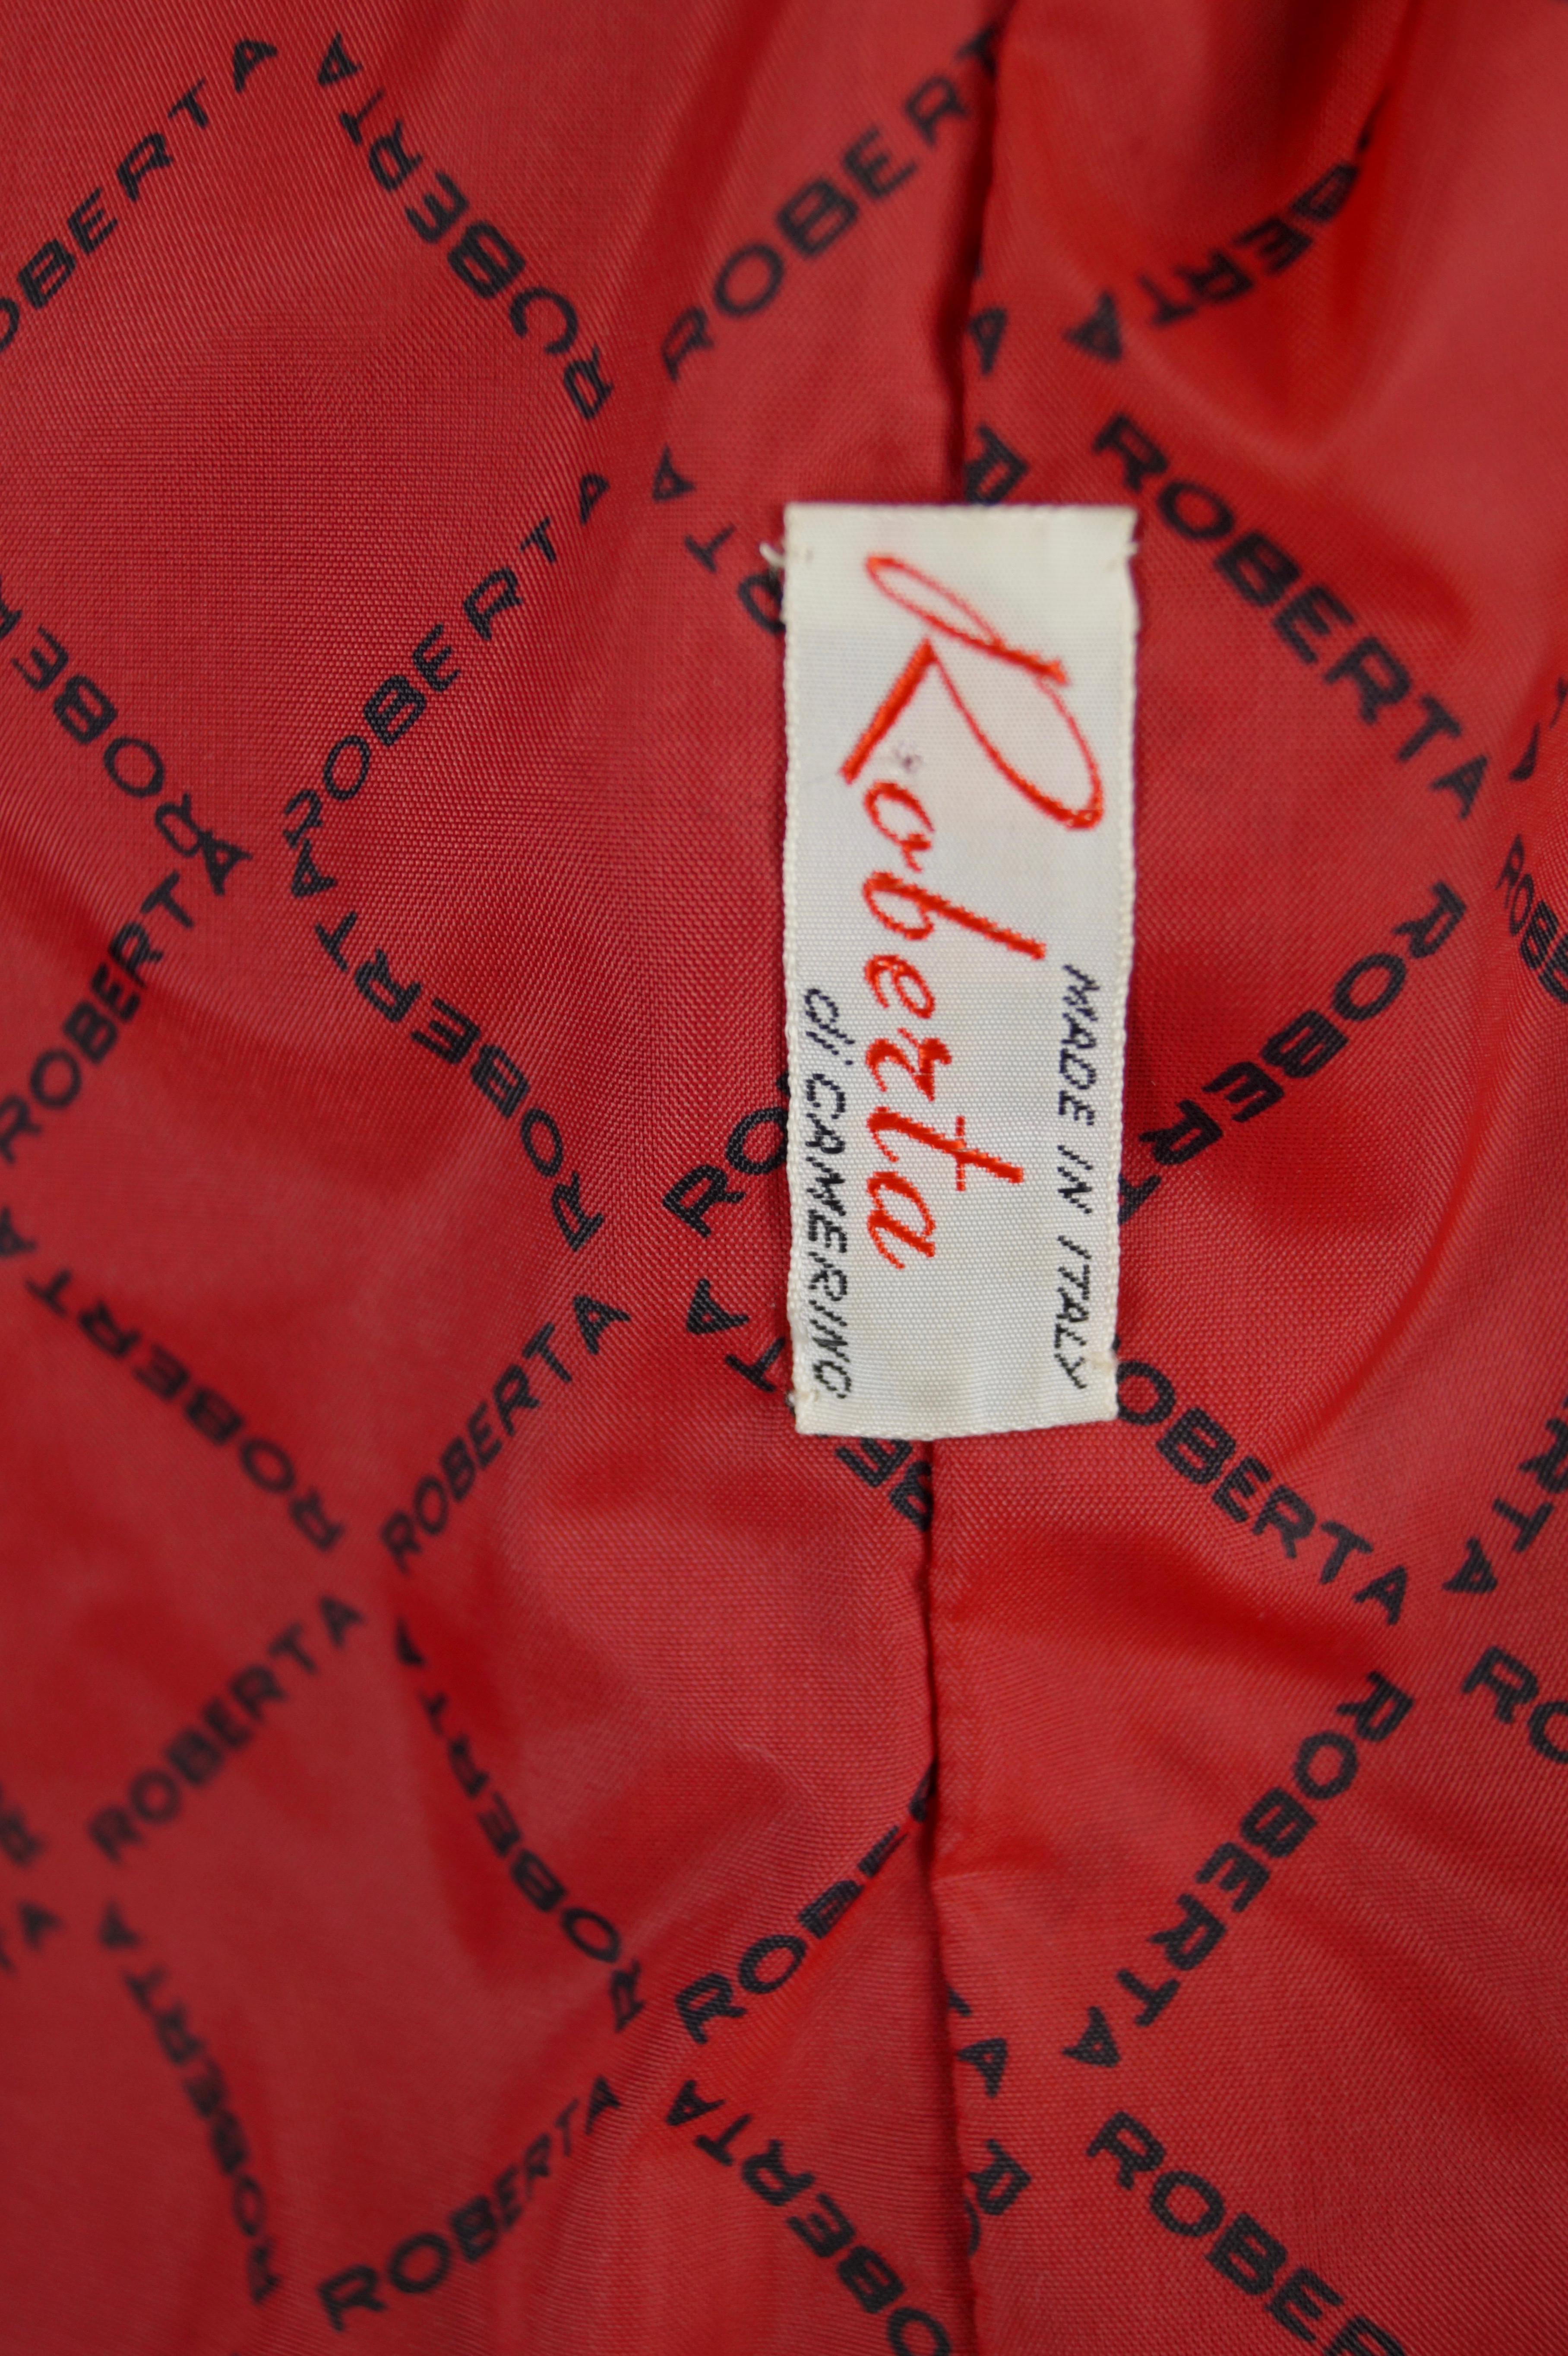 Roberta di Camerino velvet red coat vintage 70s For Sale 4